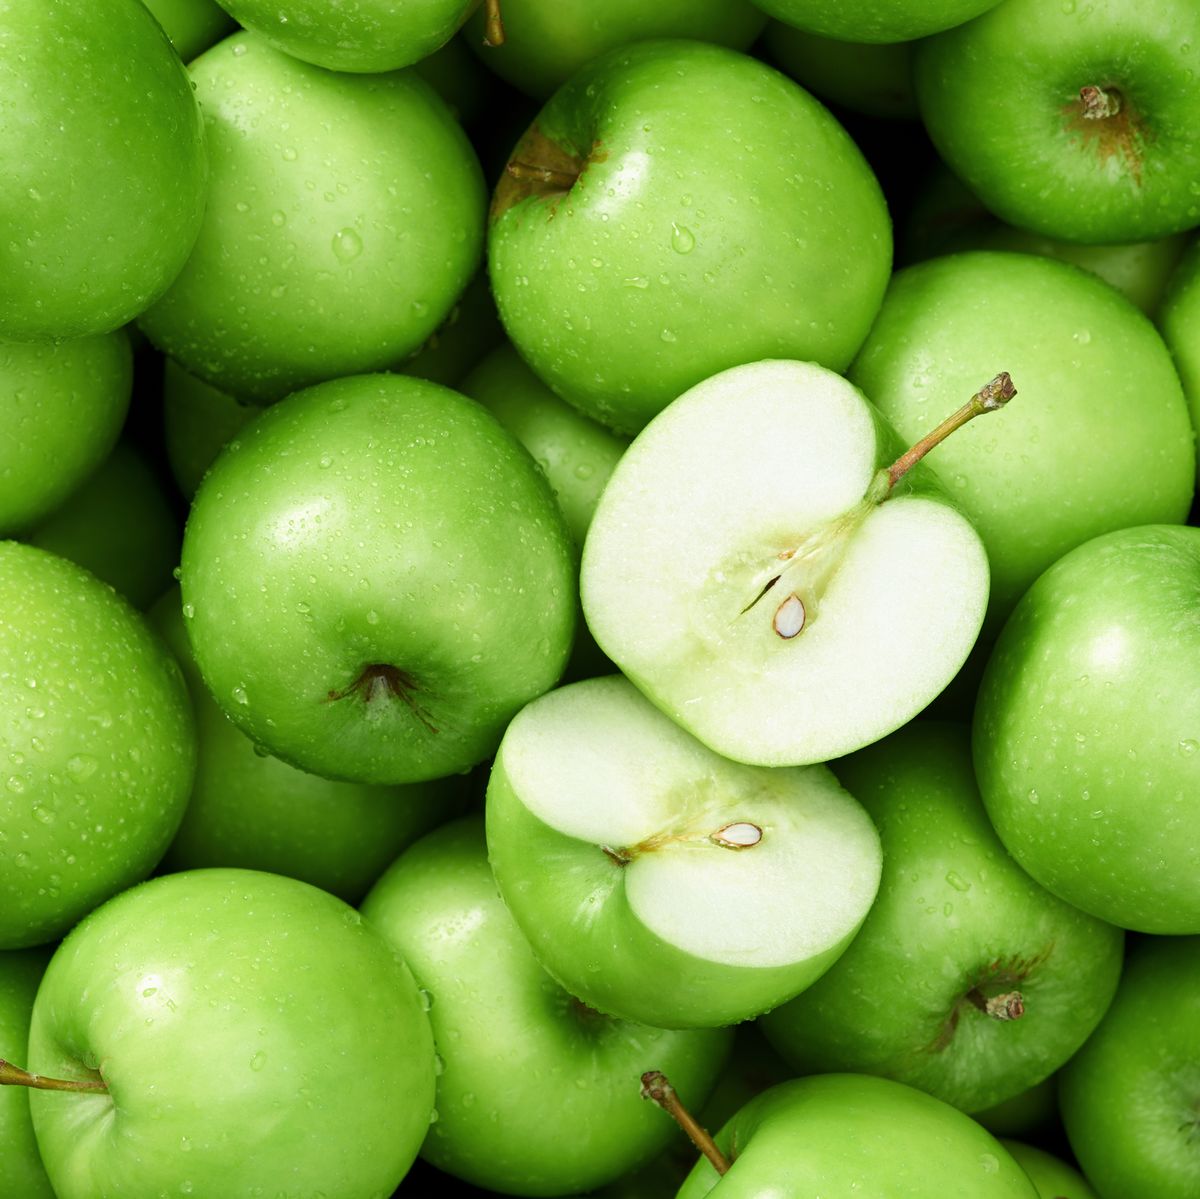 Apples: Cùng khám phá thế giới của quả táo và nhận ra tầm quan trọng của chúng trong cuộc sống hàng ngày của chúng ta. Thưởng thức những hình ảnh tươi trẻ và đầy sức sống của loại trái cây này và khám phá những công dụng và lợi ích cho sức khỏe mà chúng mang lại. Chúc bạn có một trải nghiệm mới lạ!